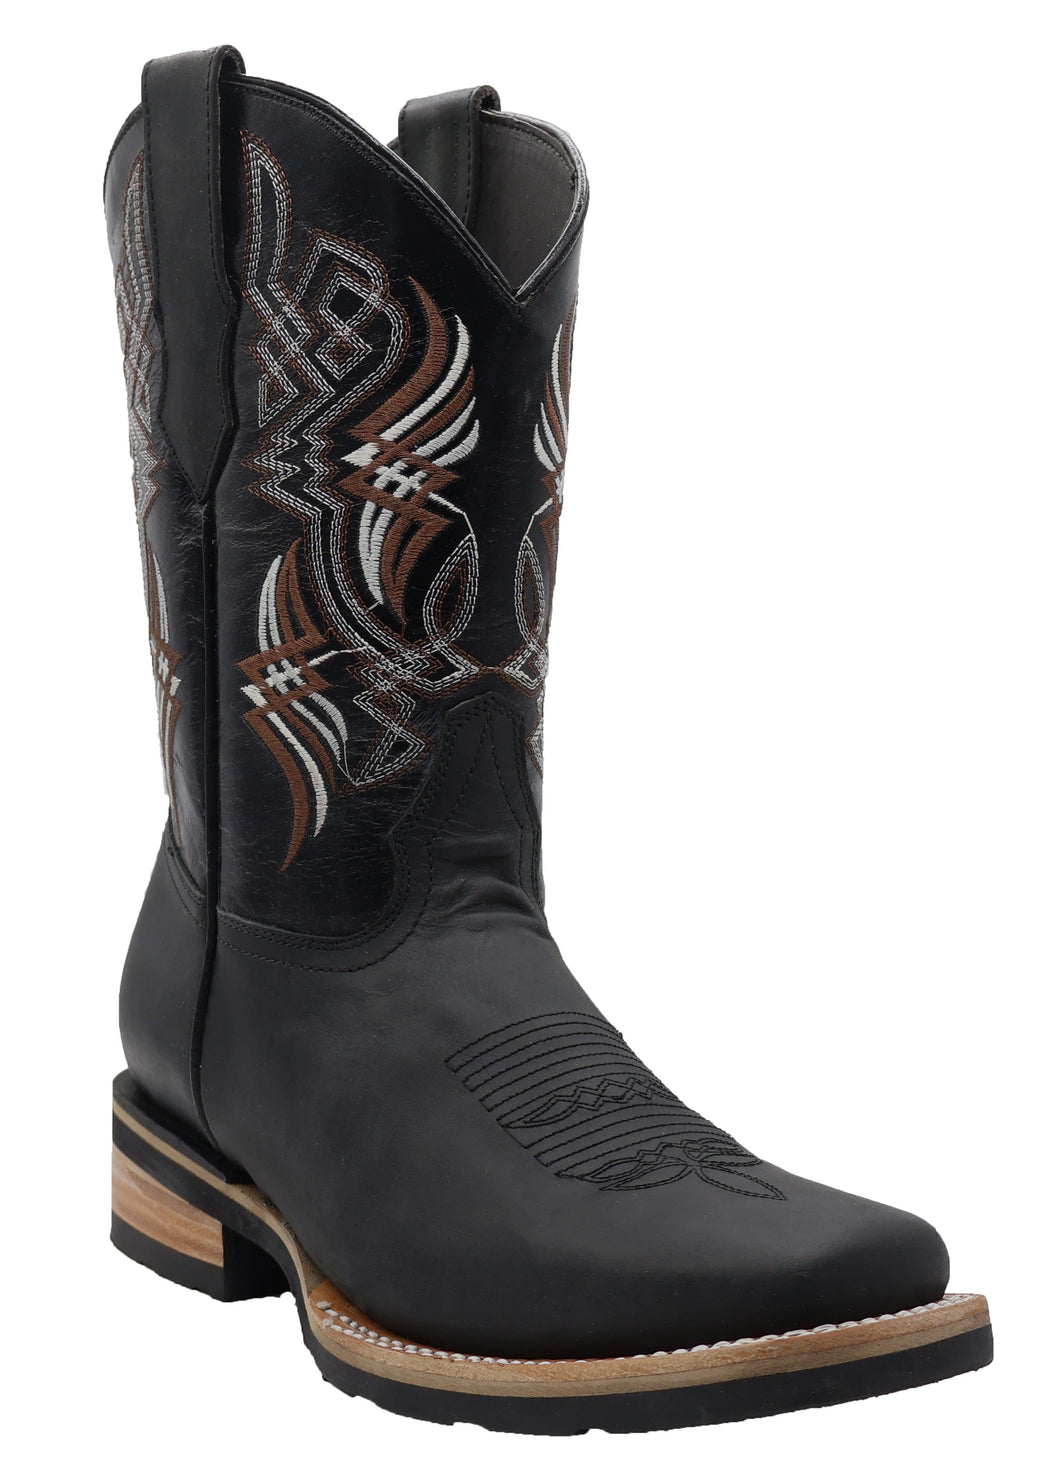 Silverton Cali All Leather Square Toe Boots (Black)